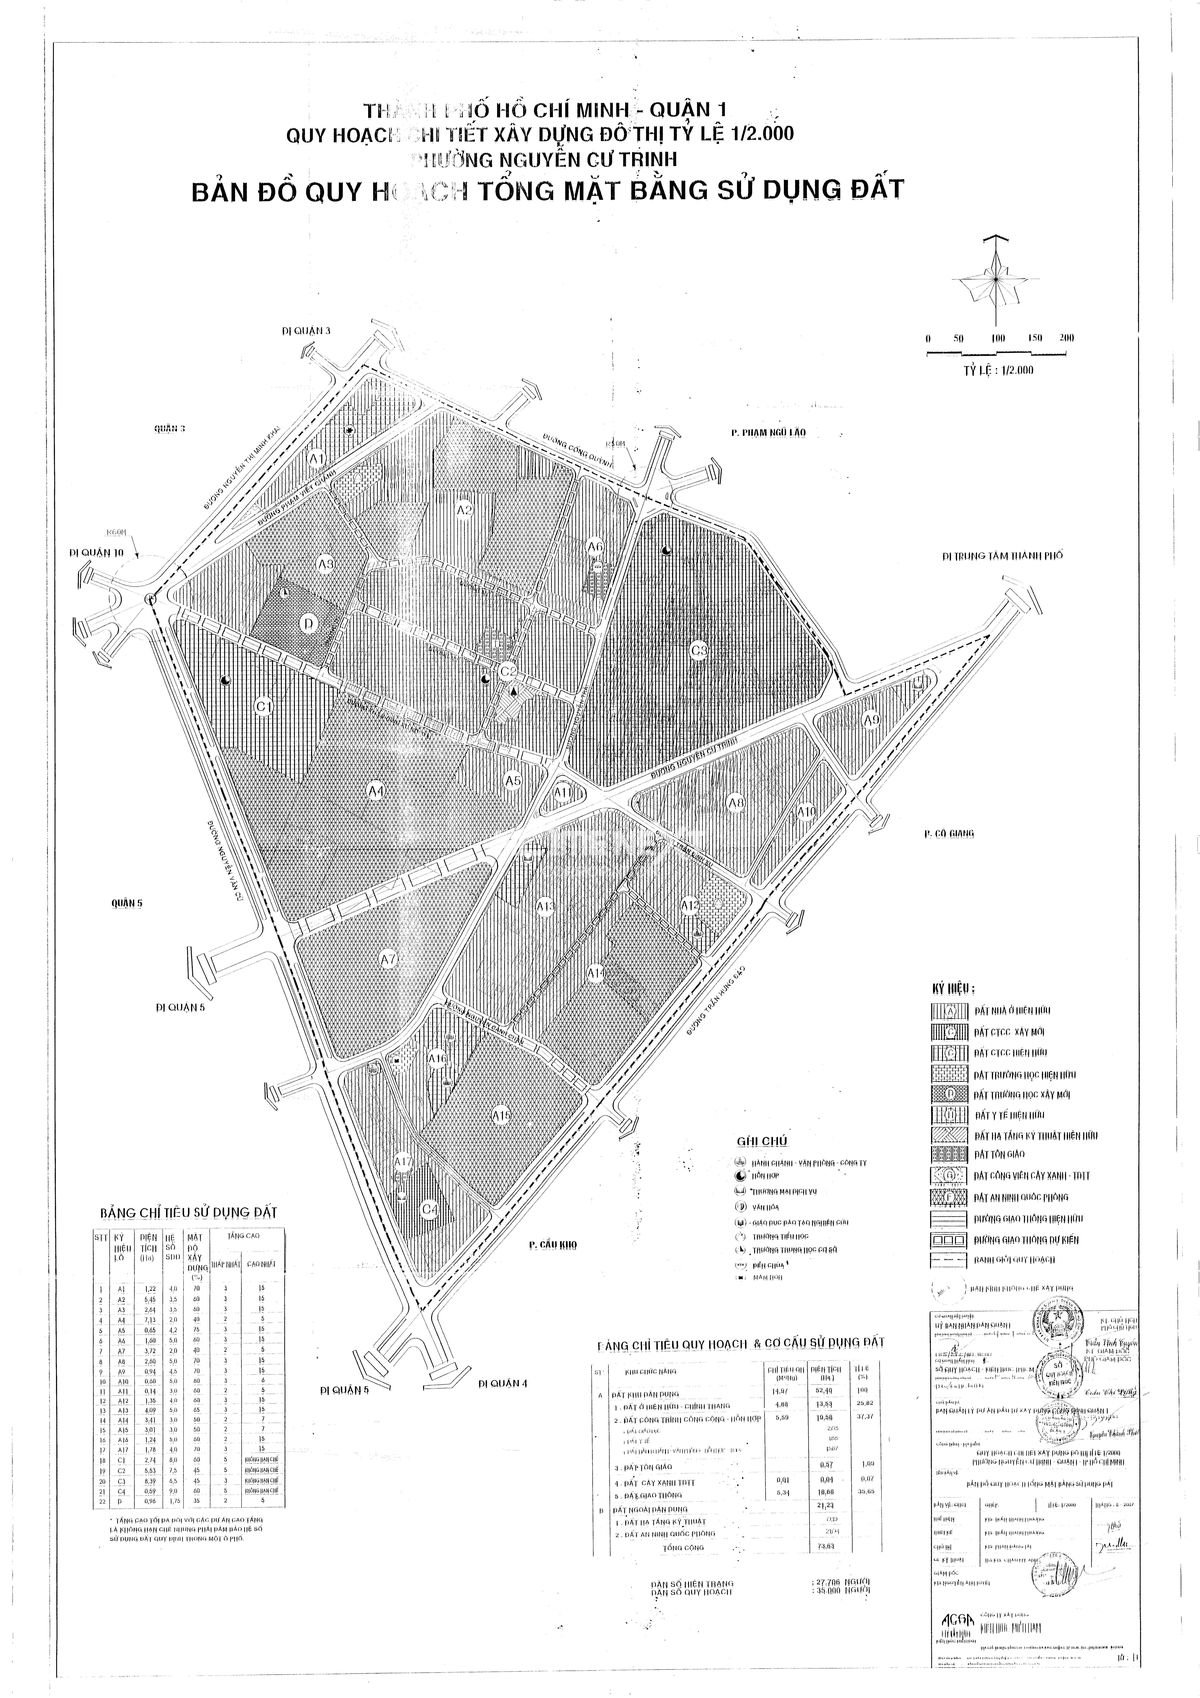 Bản đồ quy hoạch sử dụng đất 1/2000 phường Nguyễn Cư Trinh quận 1